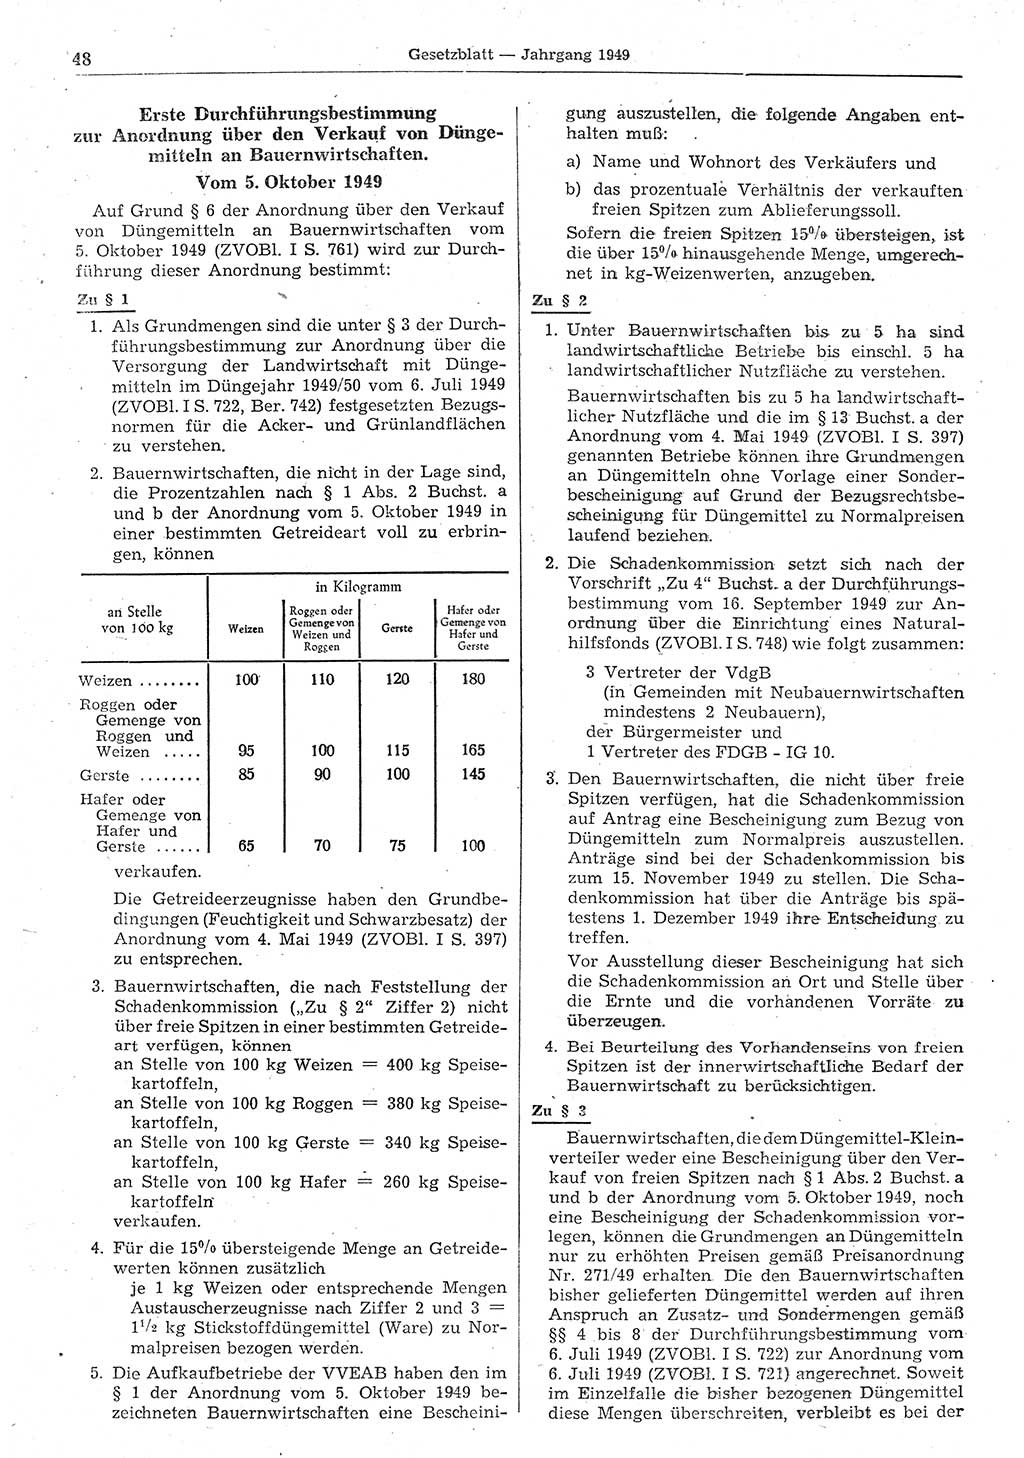 Gesetzblatt (GBl.) der Deutschen Demokratischen Republik (DDR) 1949, Seite 48 (GBl. DDR 1949, S. 48)